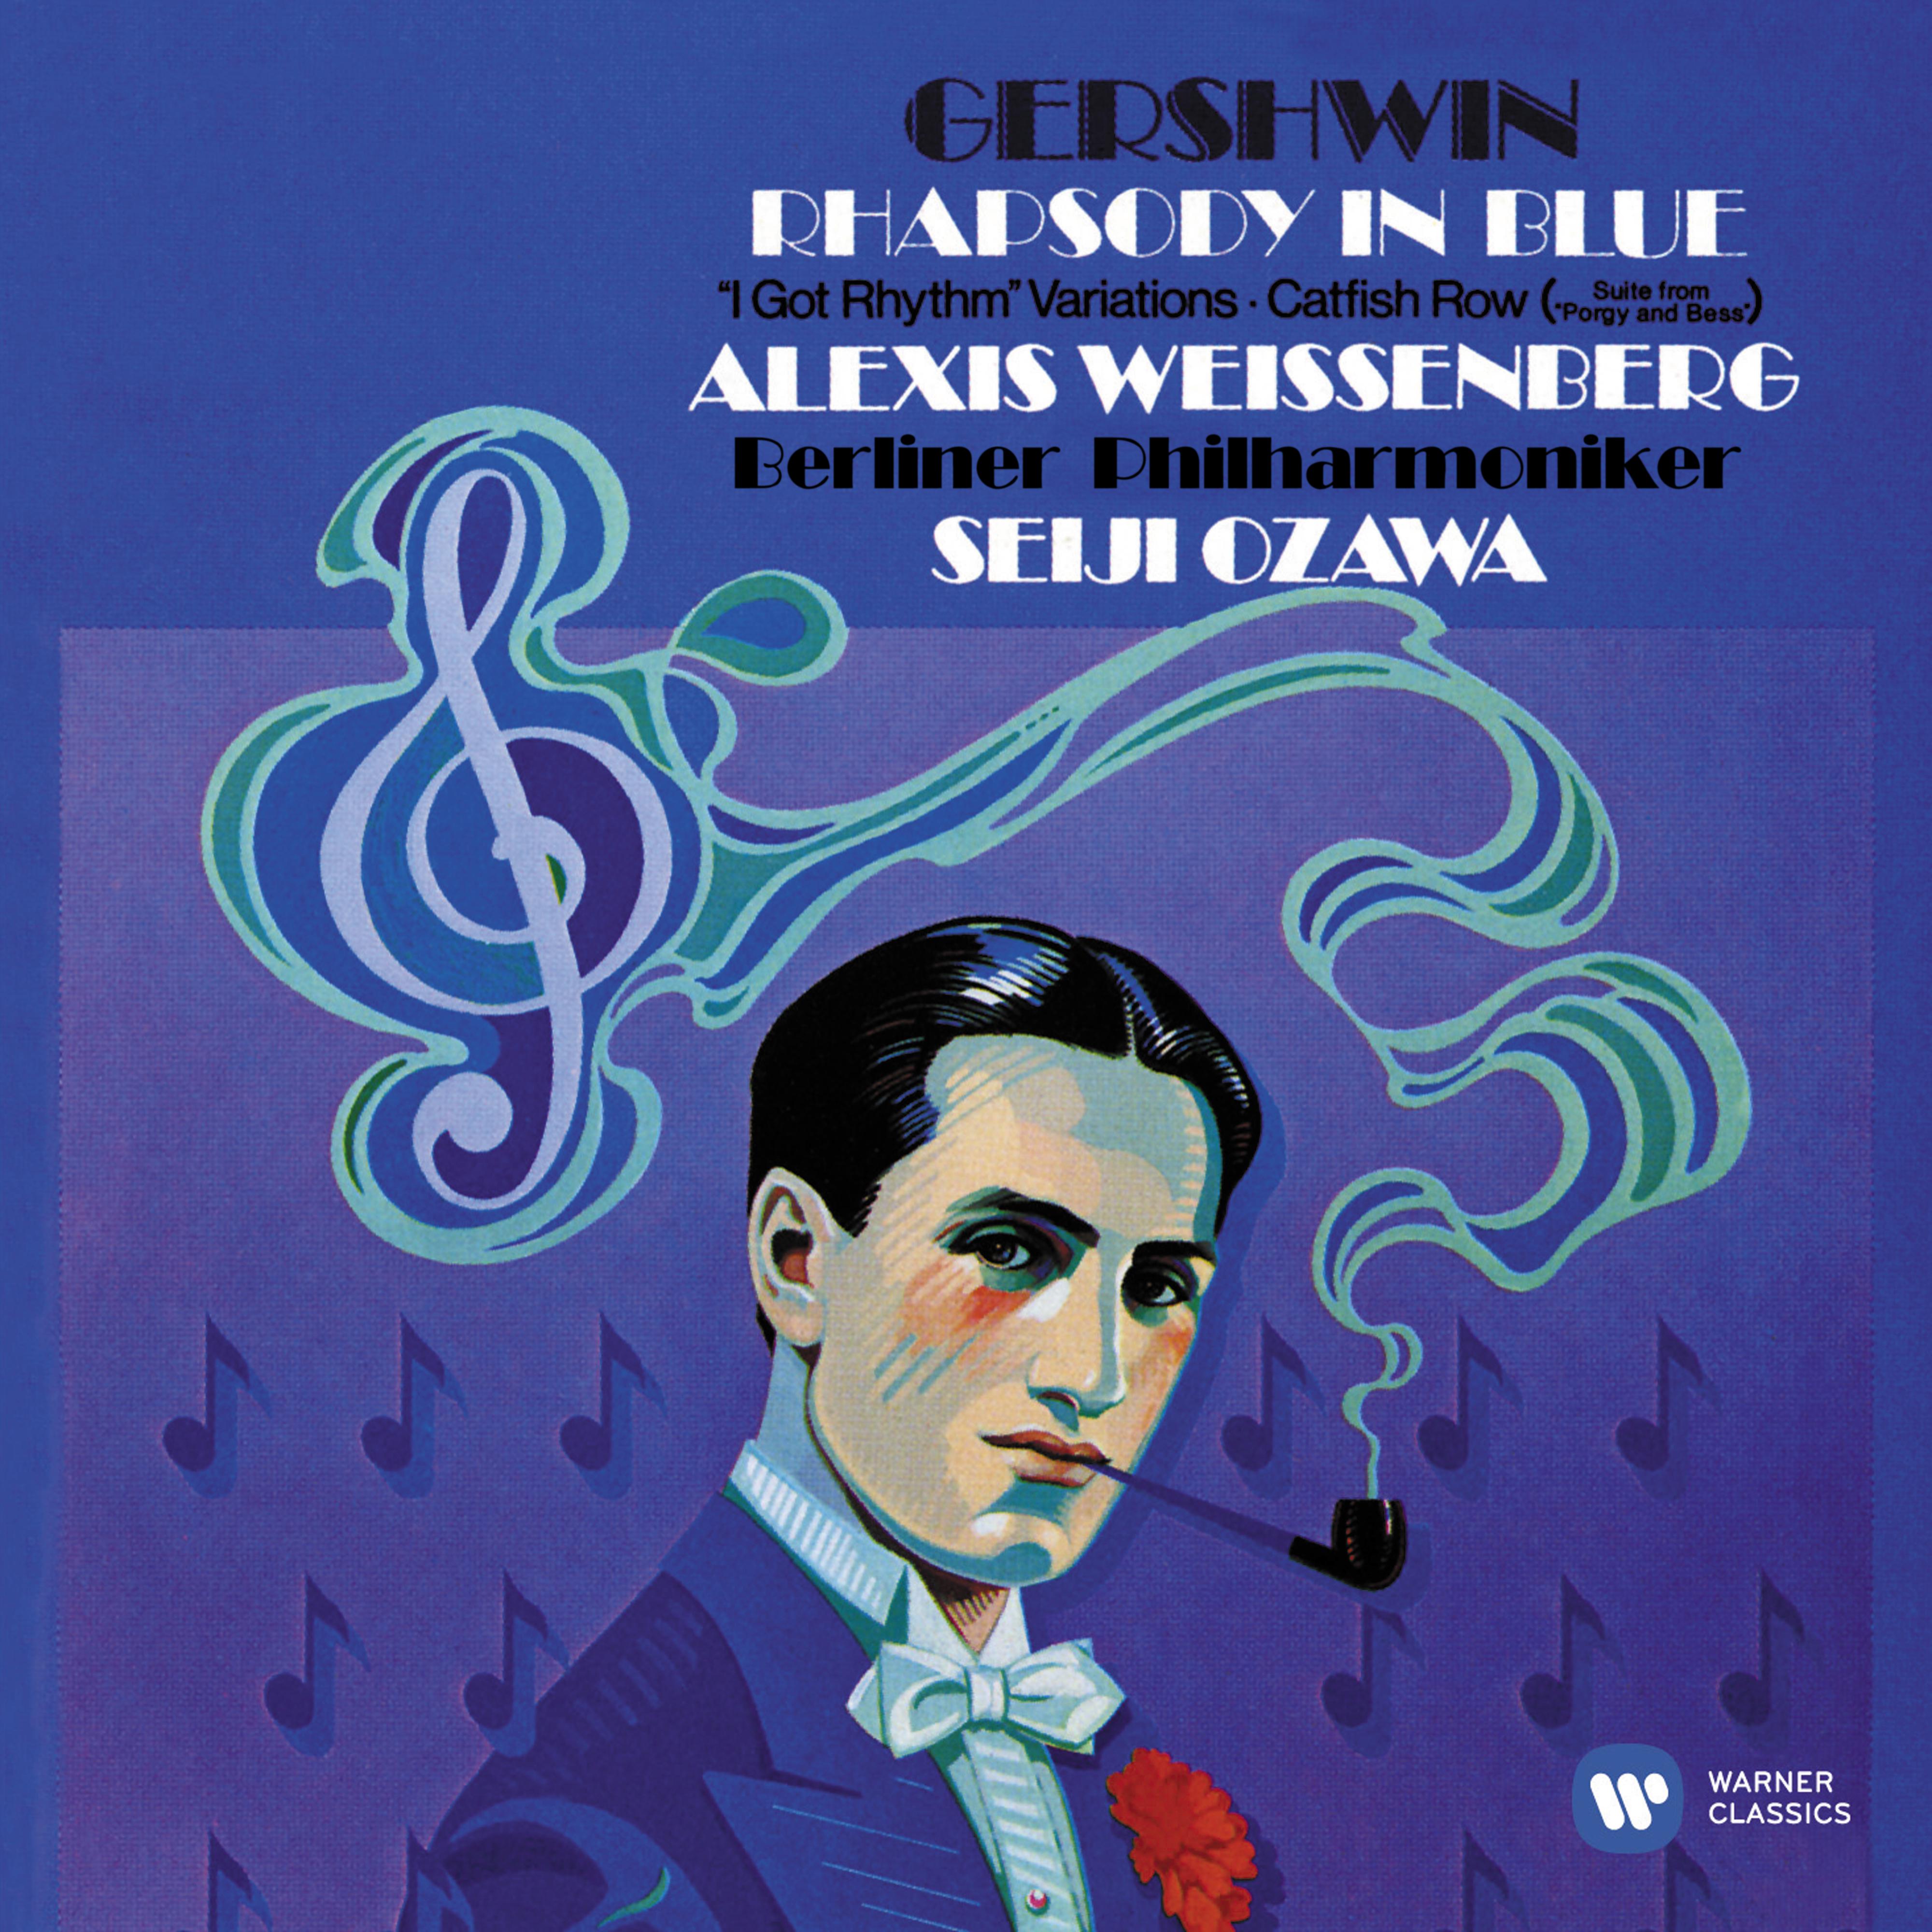 Gershwin: Rhapsody in Blue, Variations on "I Got Rhythm" & Catfish Row